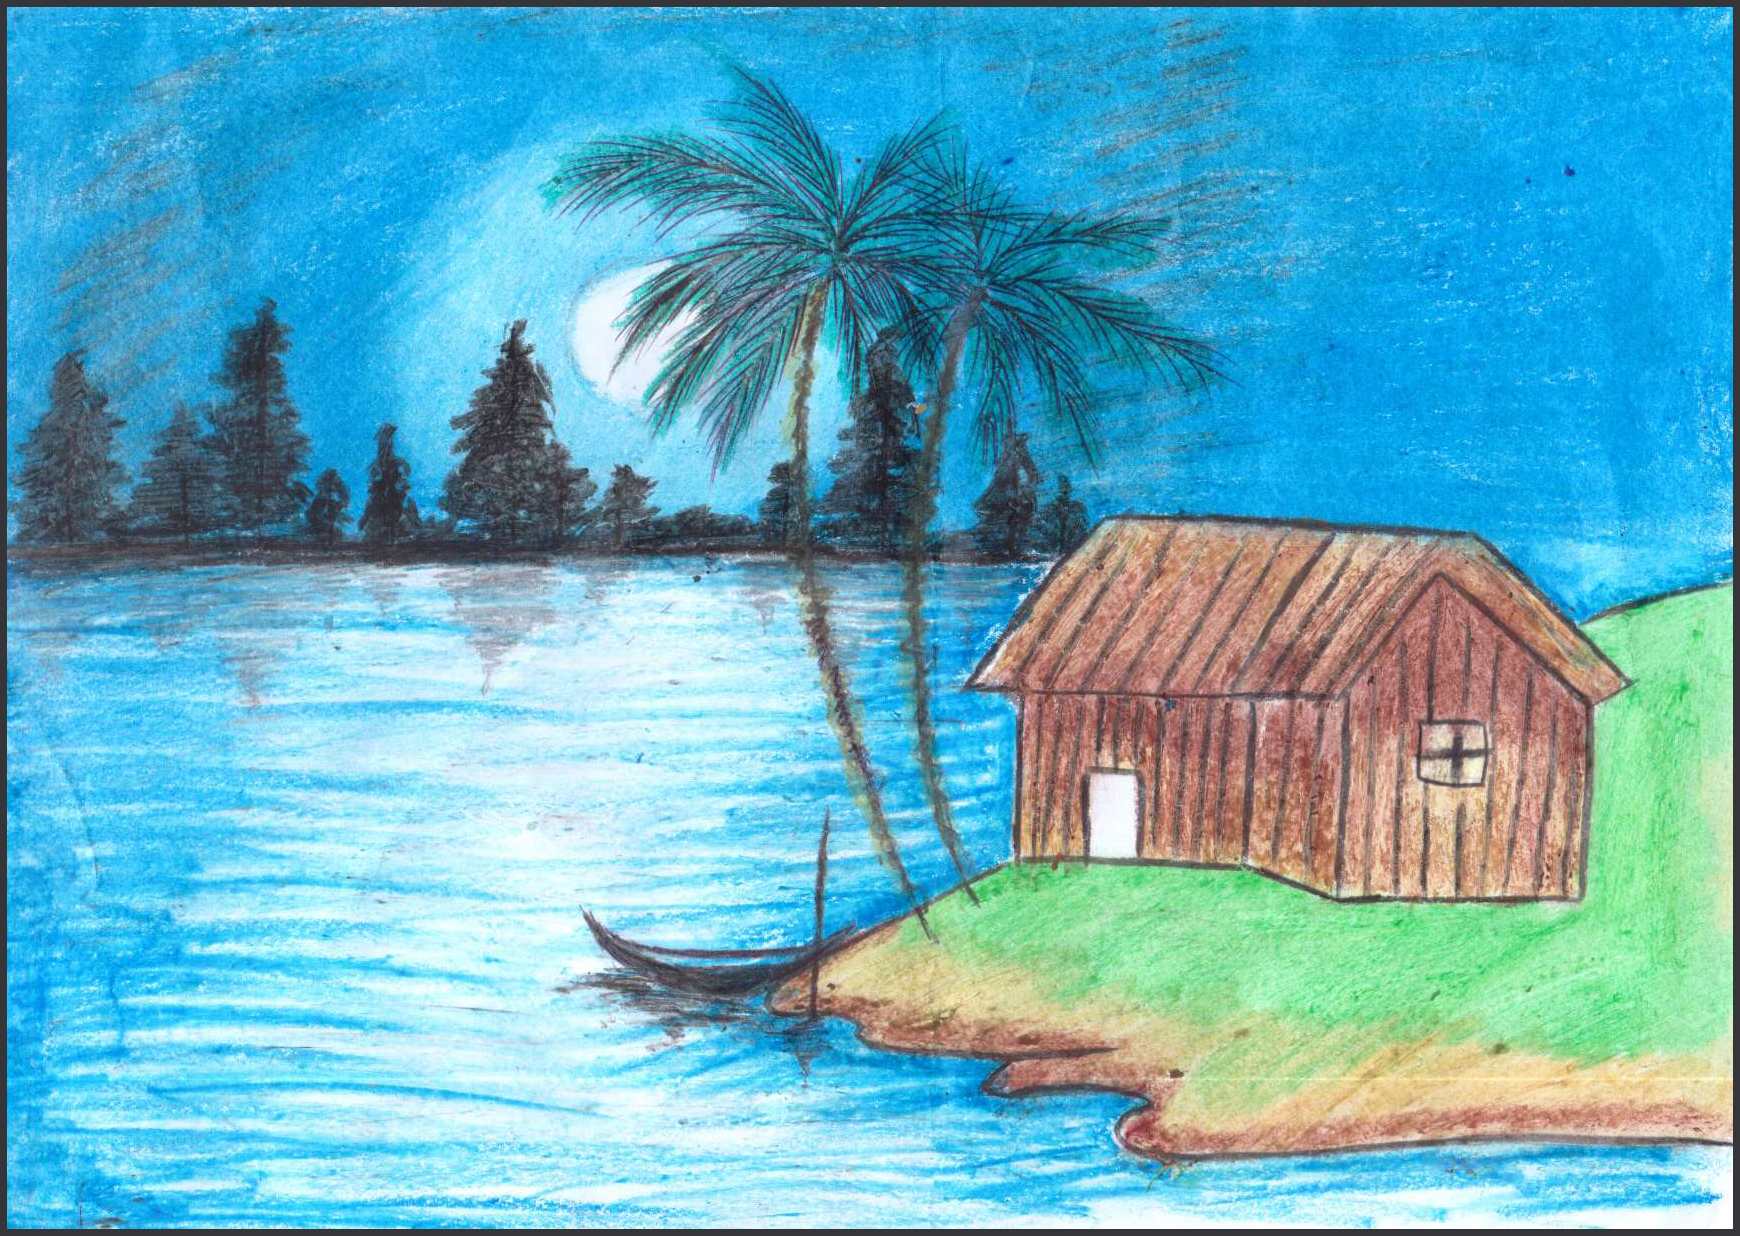 نقاشی شماره ۴- زهرا اسماعیل زاده ۱۷ ساله – موضوع :نعمتهای خدا (دریا یکی از نعمتهایی است که خدا به ما اعطا کرده)